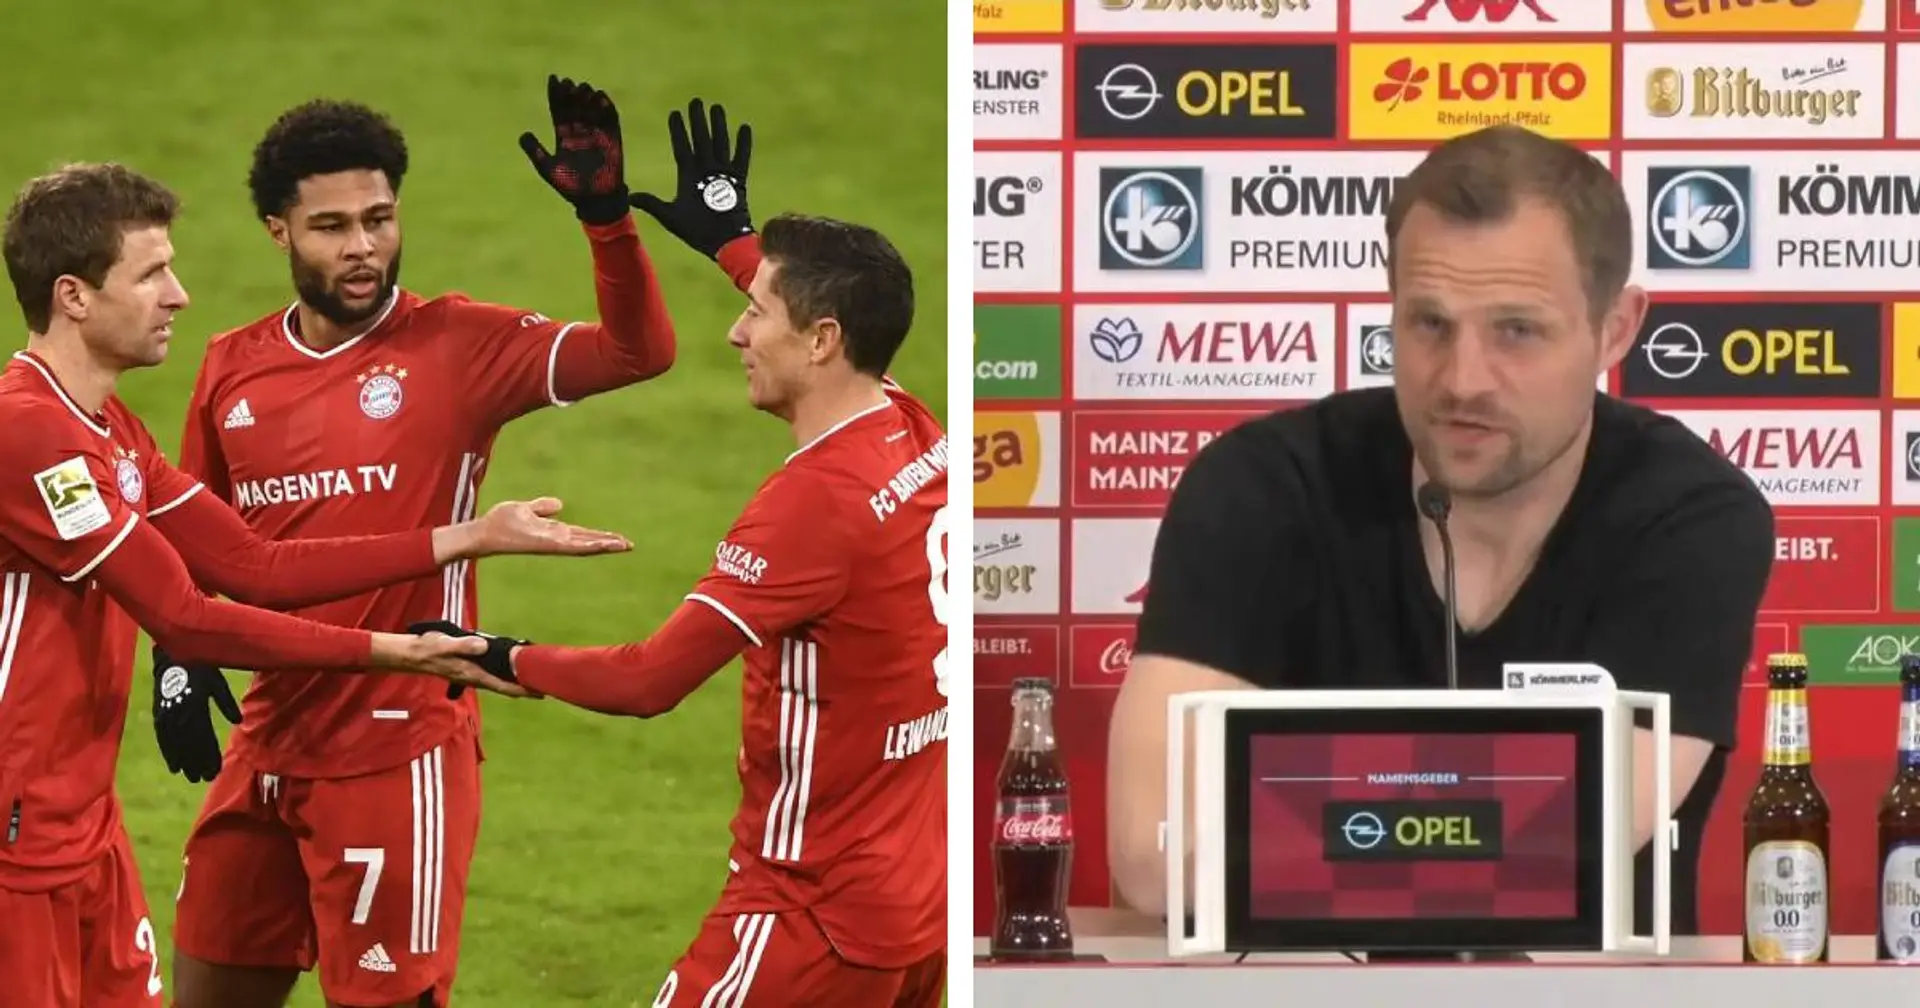 "Da ist auch nichts unmöglich": Mainz-Coach Bo Svensson glaubt an Überraschung gegen Bayern